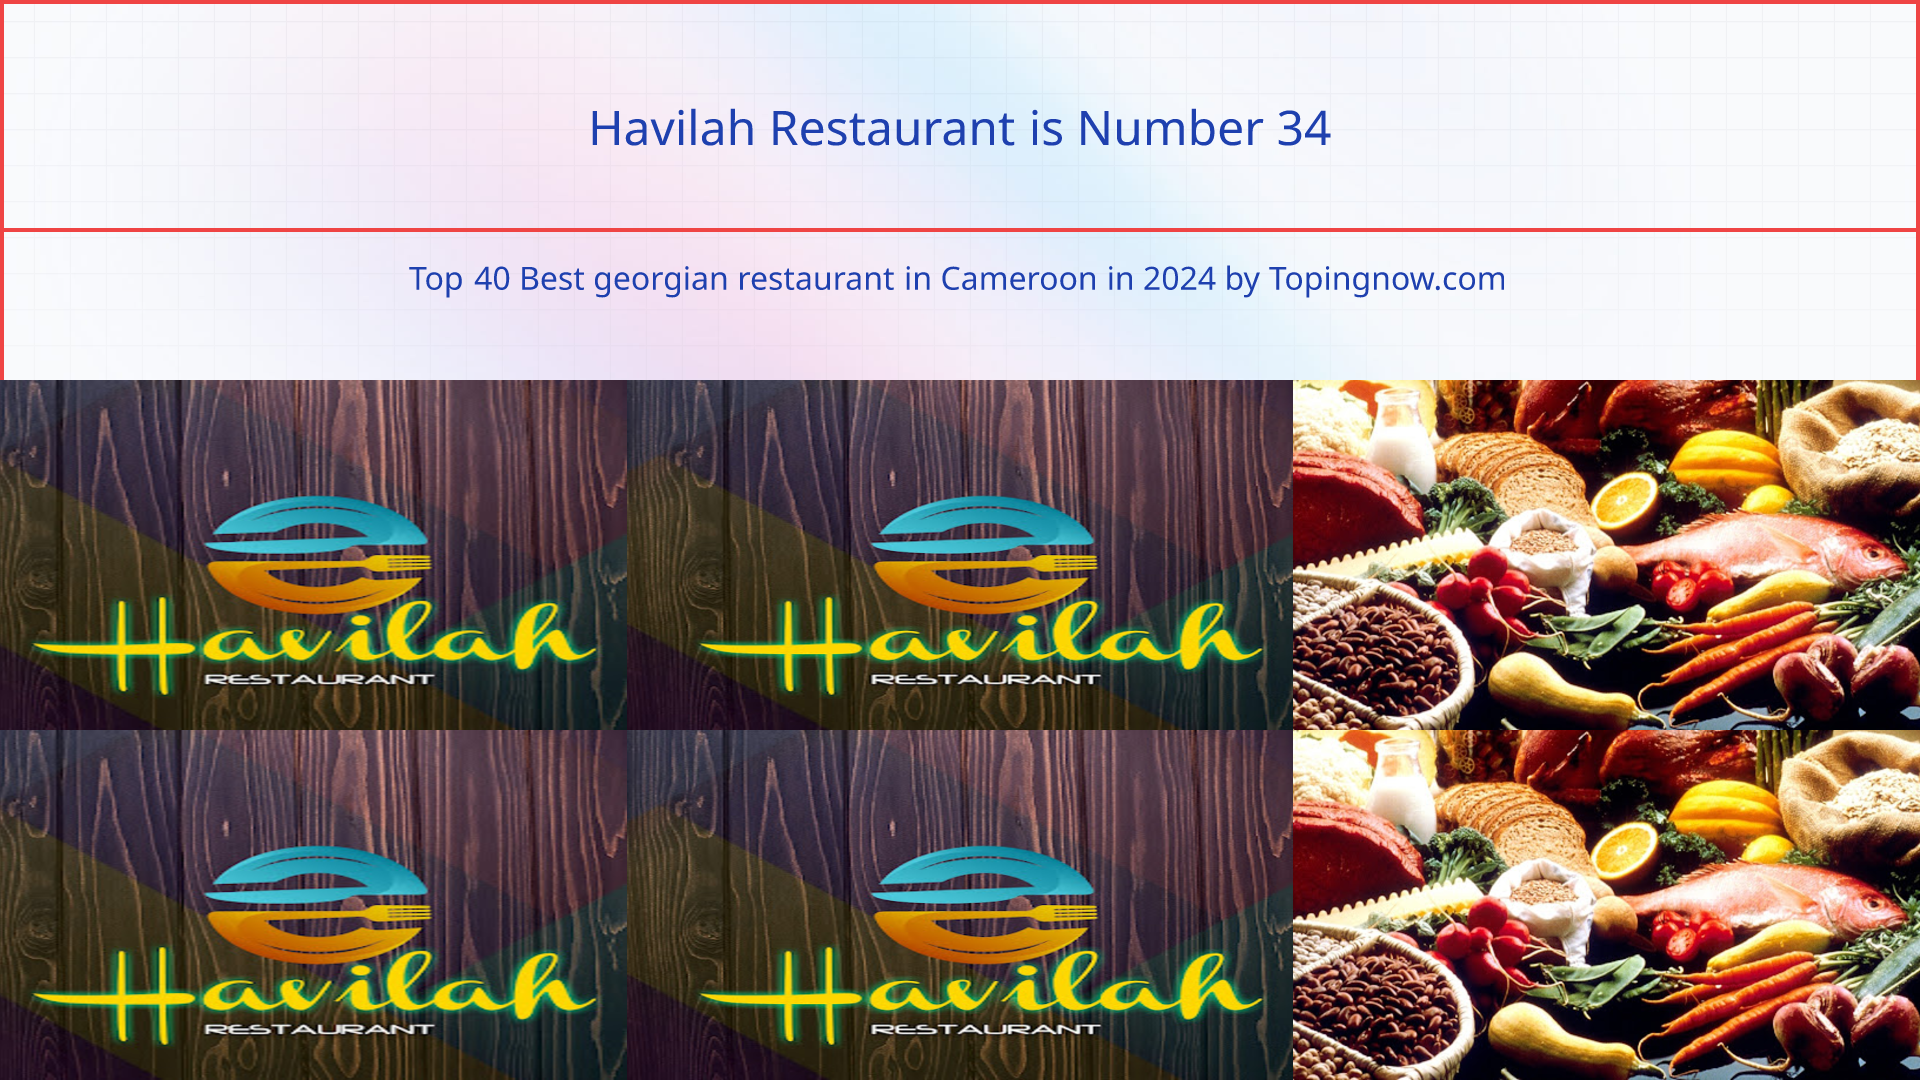 Havilah Restaurant: Top 40 Best georgian restaurant in Cameroon in 2024